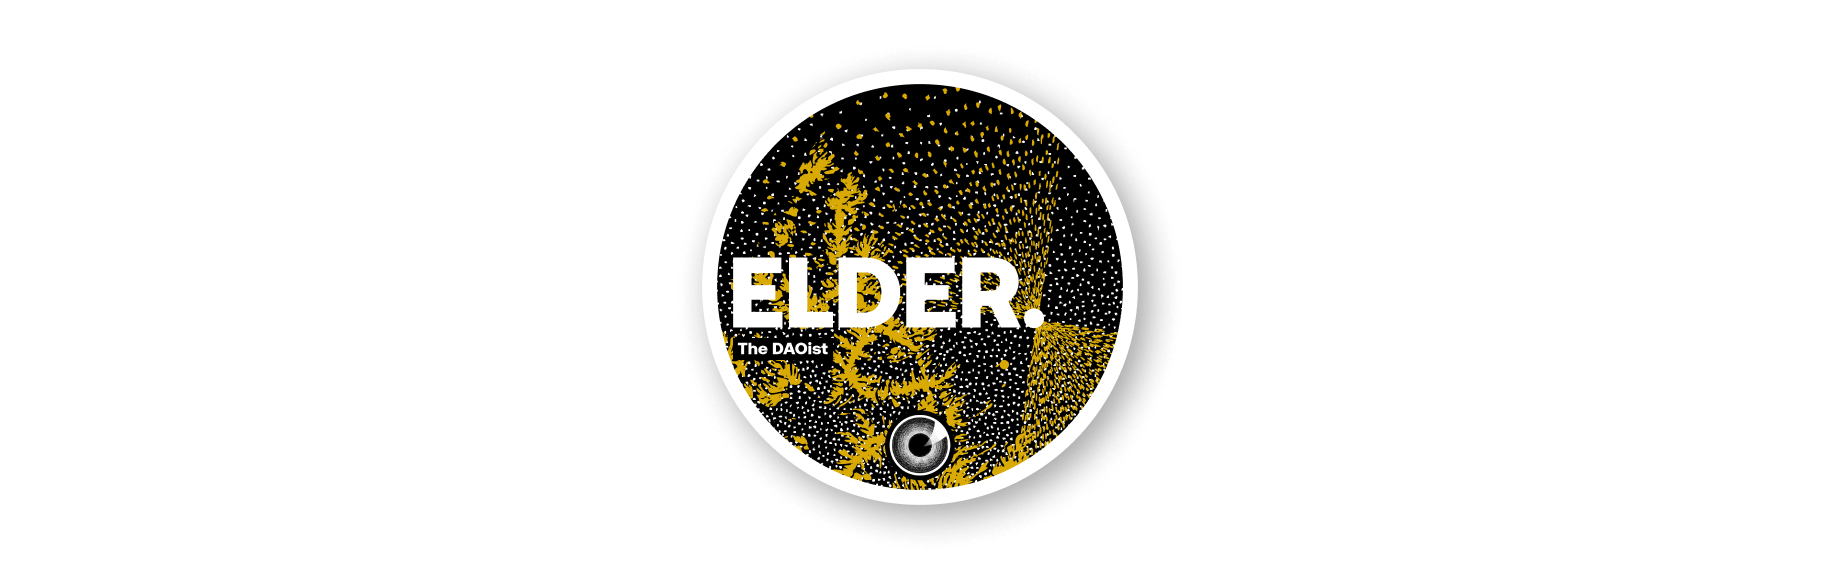 Elder token